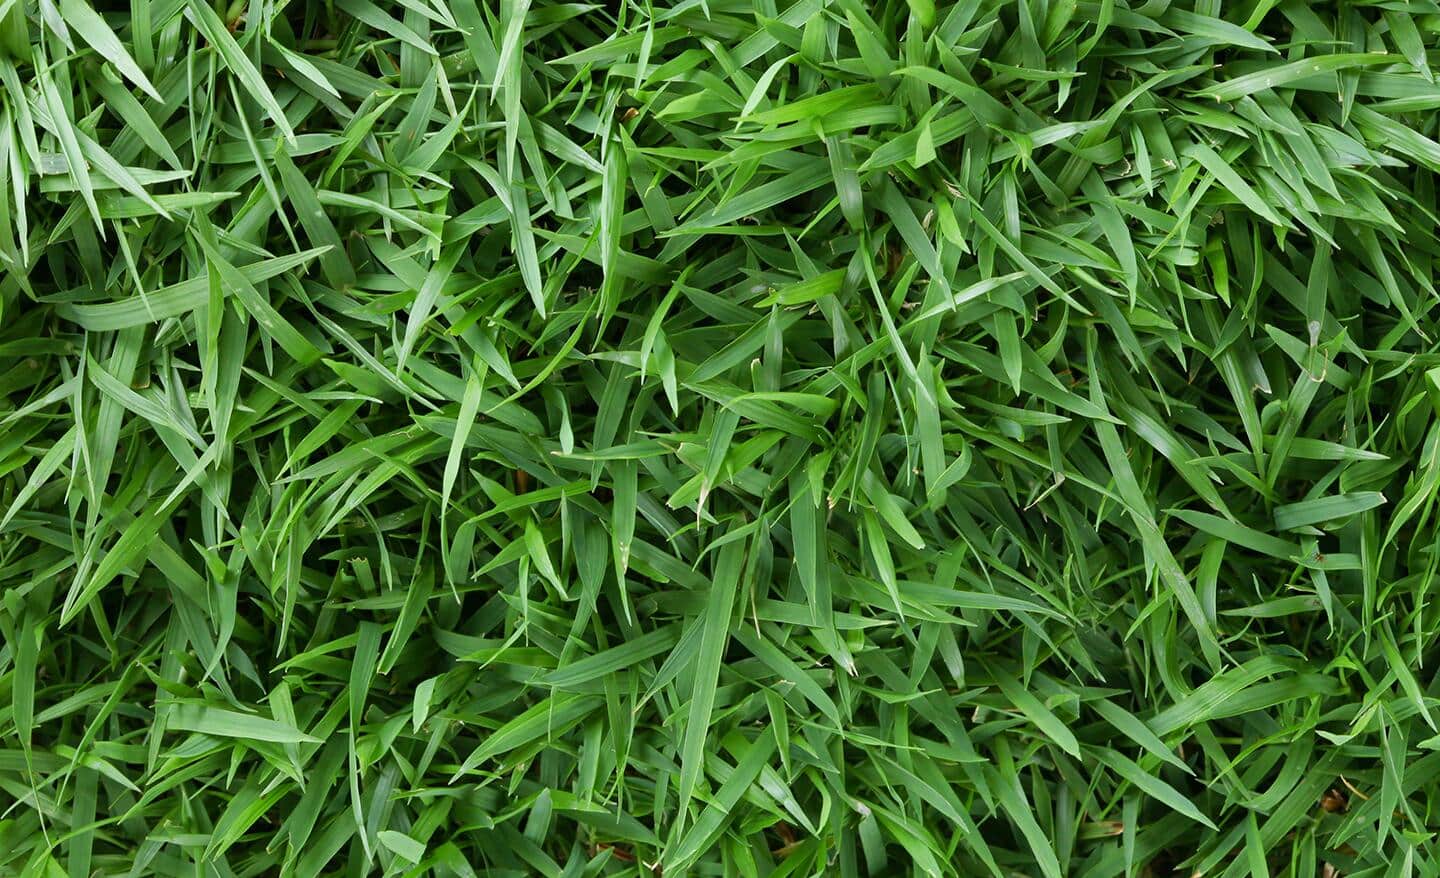 Zoysia grass lawn